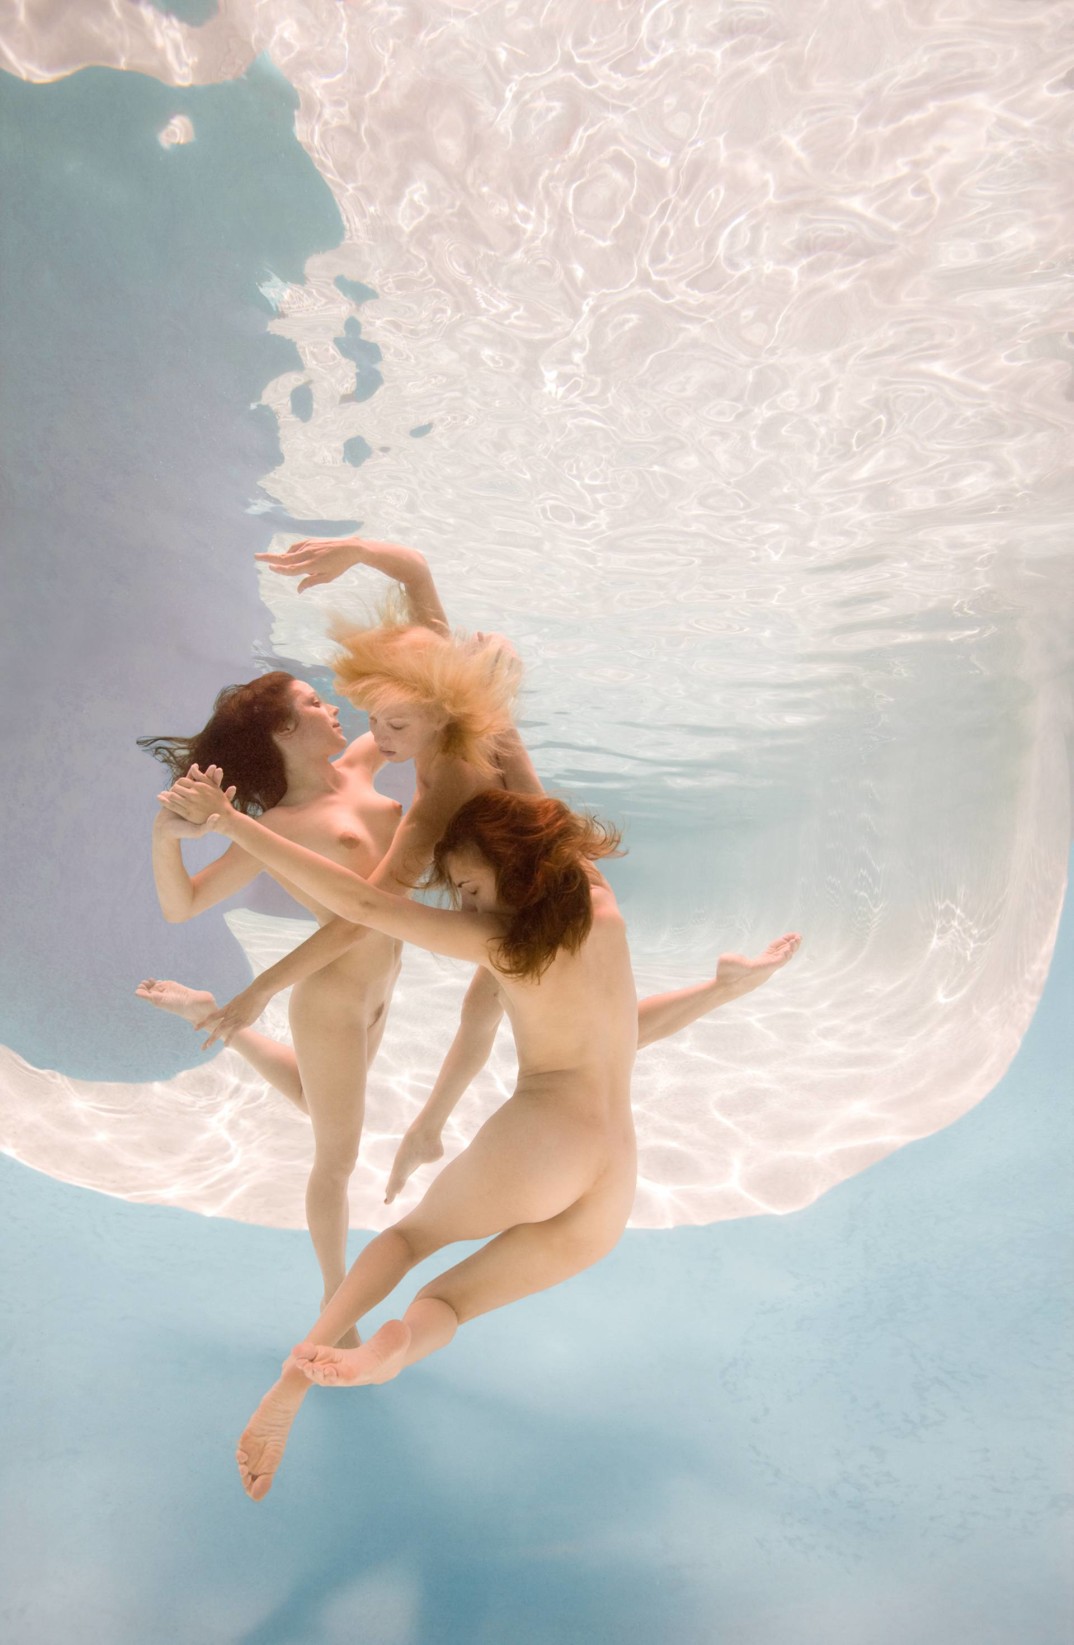 Underwater Nude Trio 02 - Ed Freeman Photography